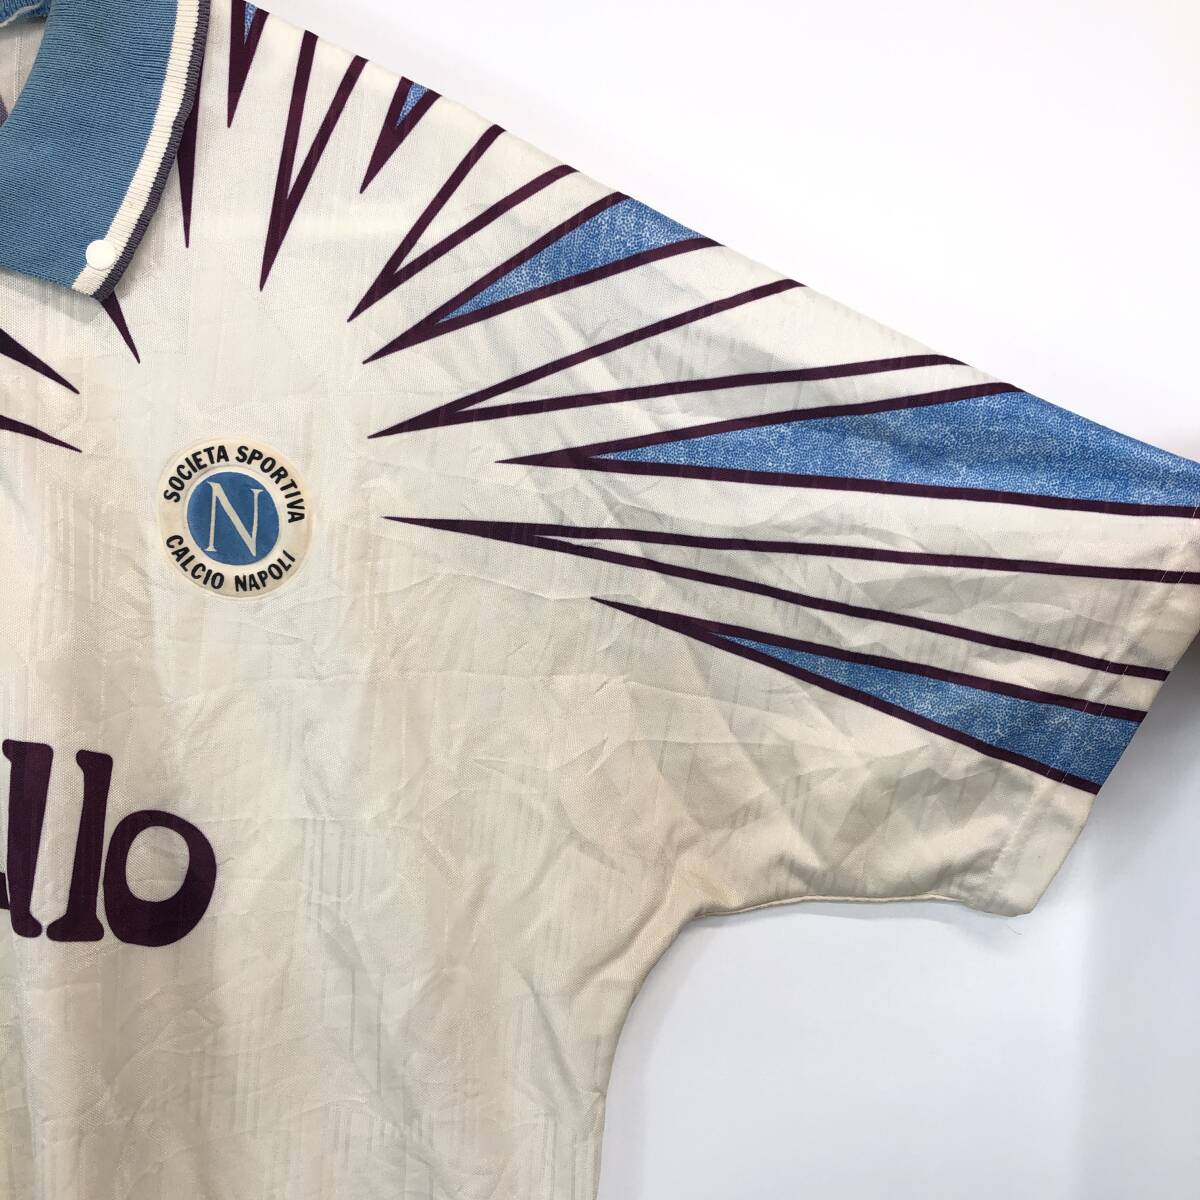 アンブロ UMBRO ナポリ1992/93シーズン アウェイユニフォーム ゲームシャツ 半袖 イングランド製